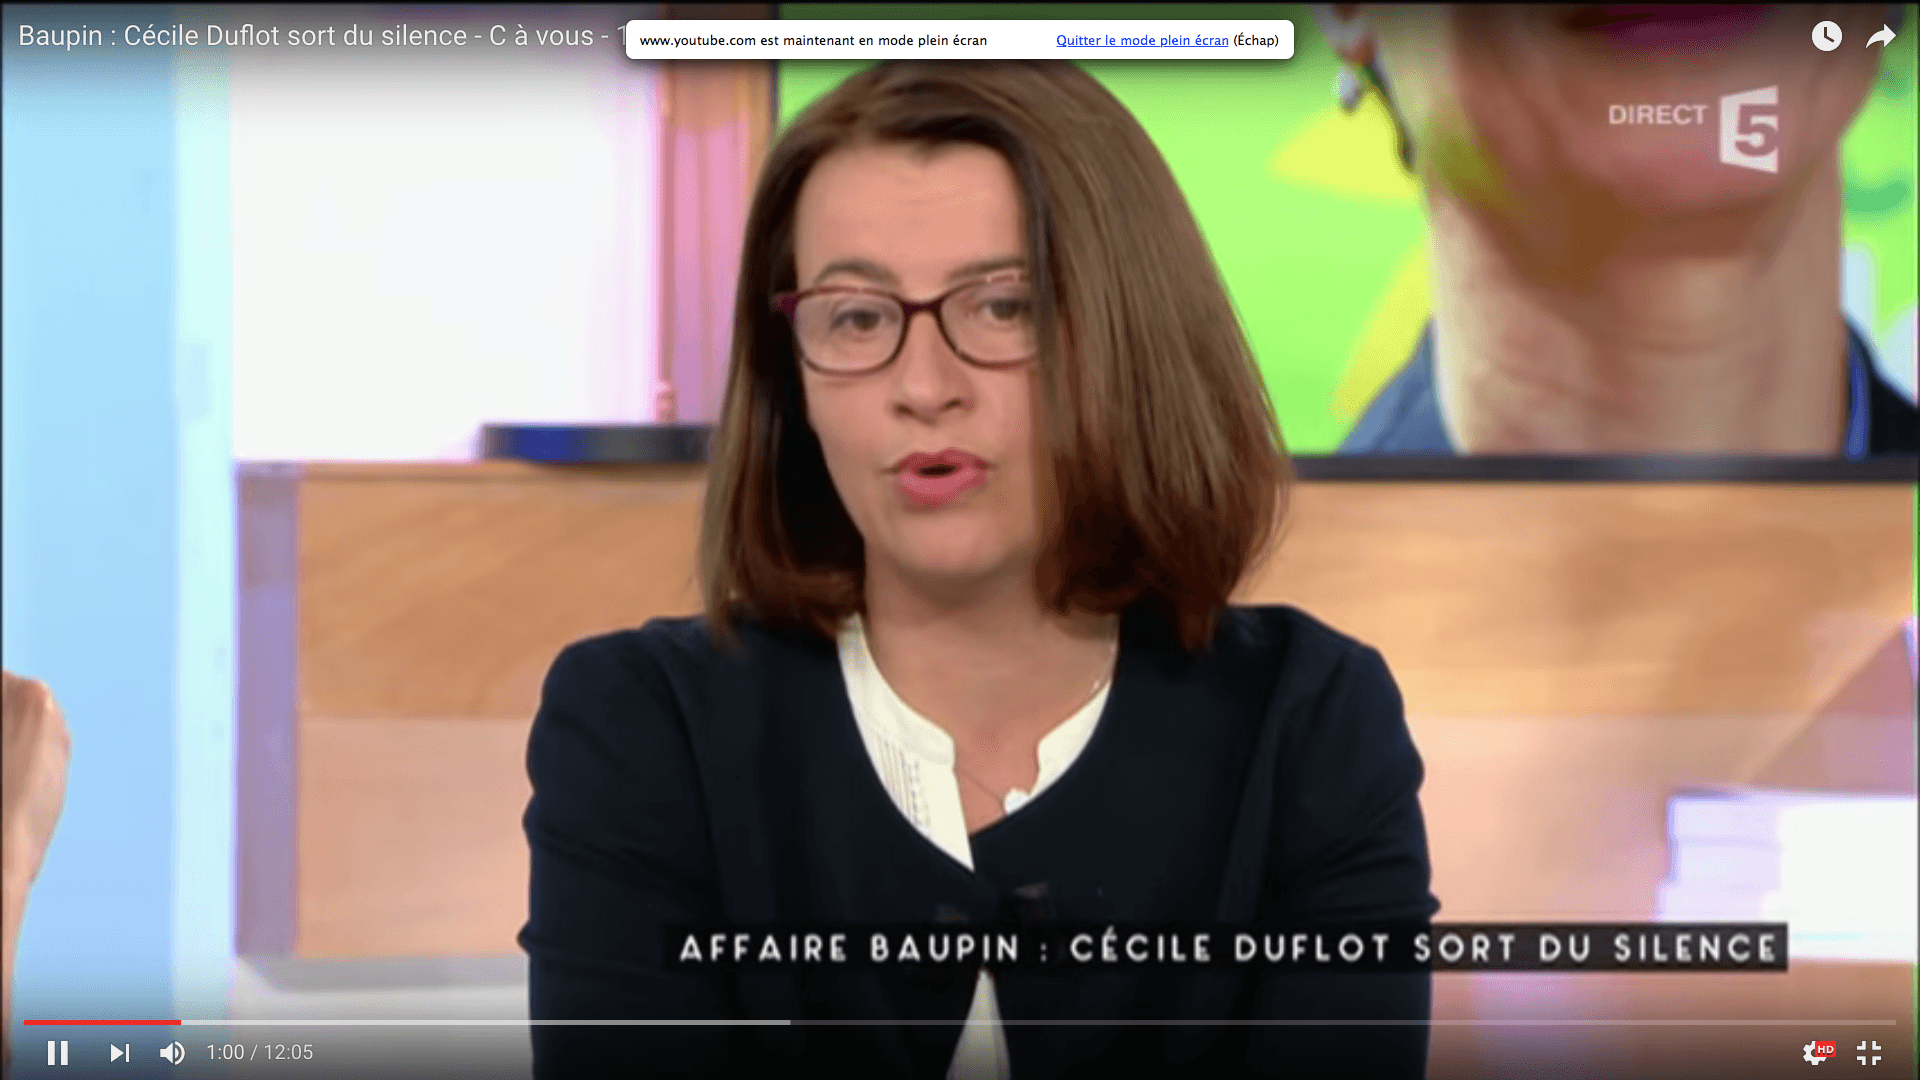 Cécile Duflot, C à vous, France 5 « Affaire Baupin : Cécile Duflot sort du silence »